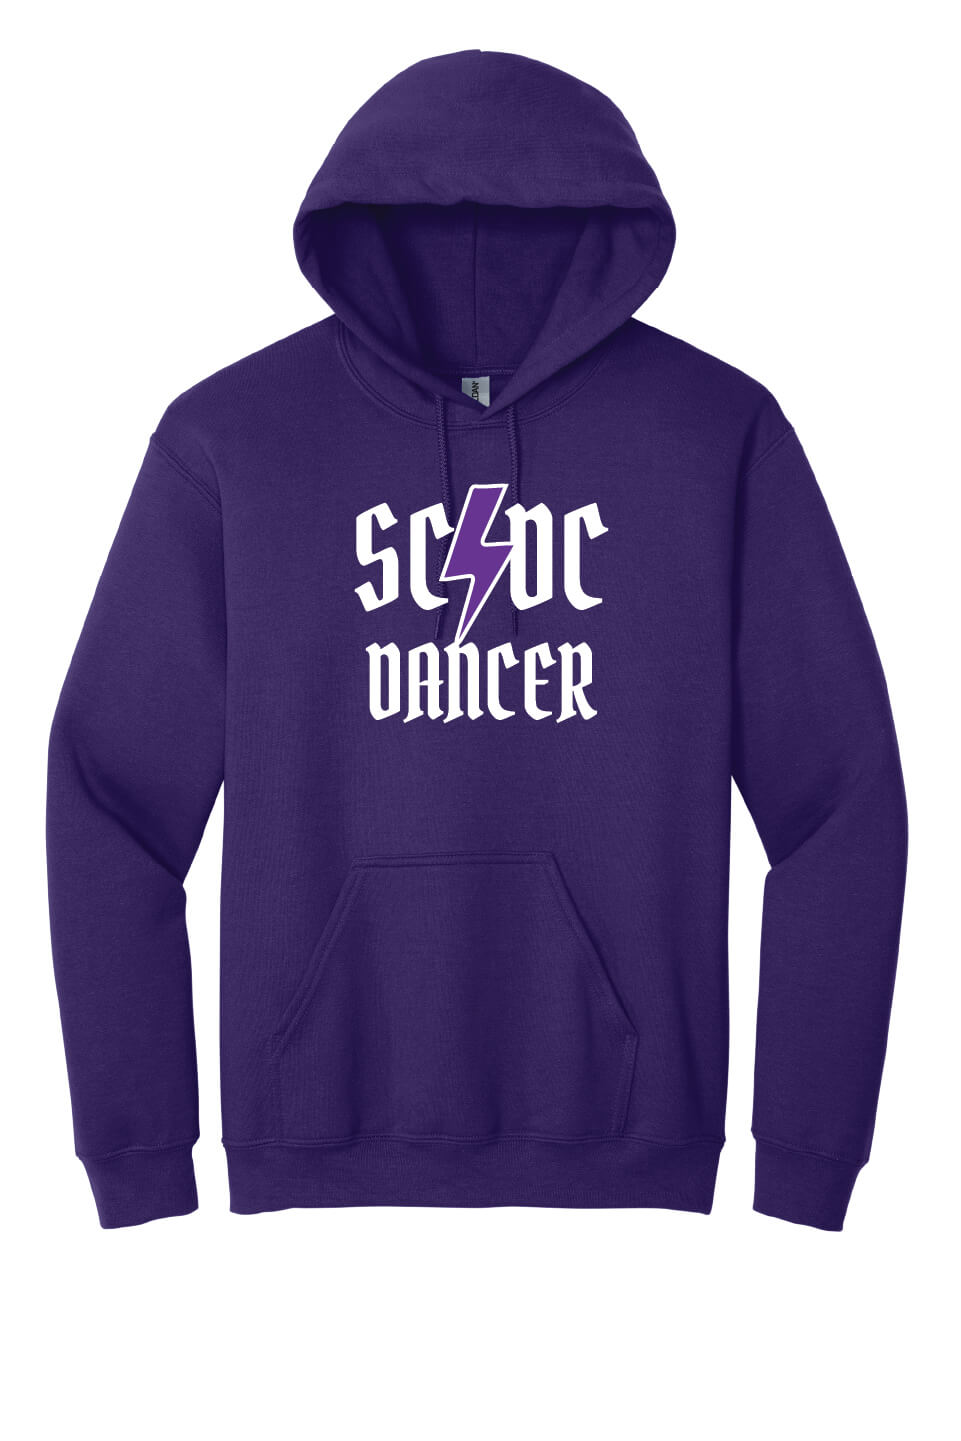 SCDC Dancer Hoodie purple